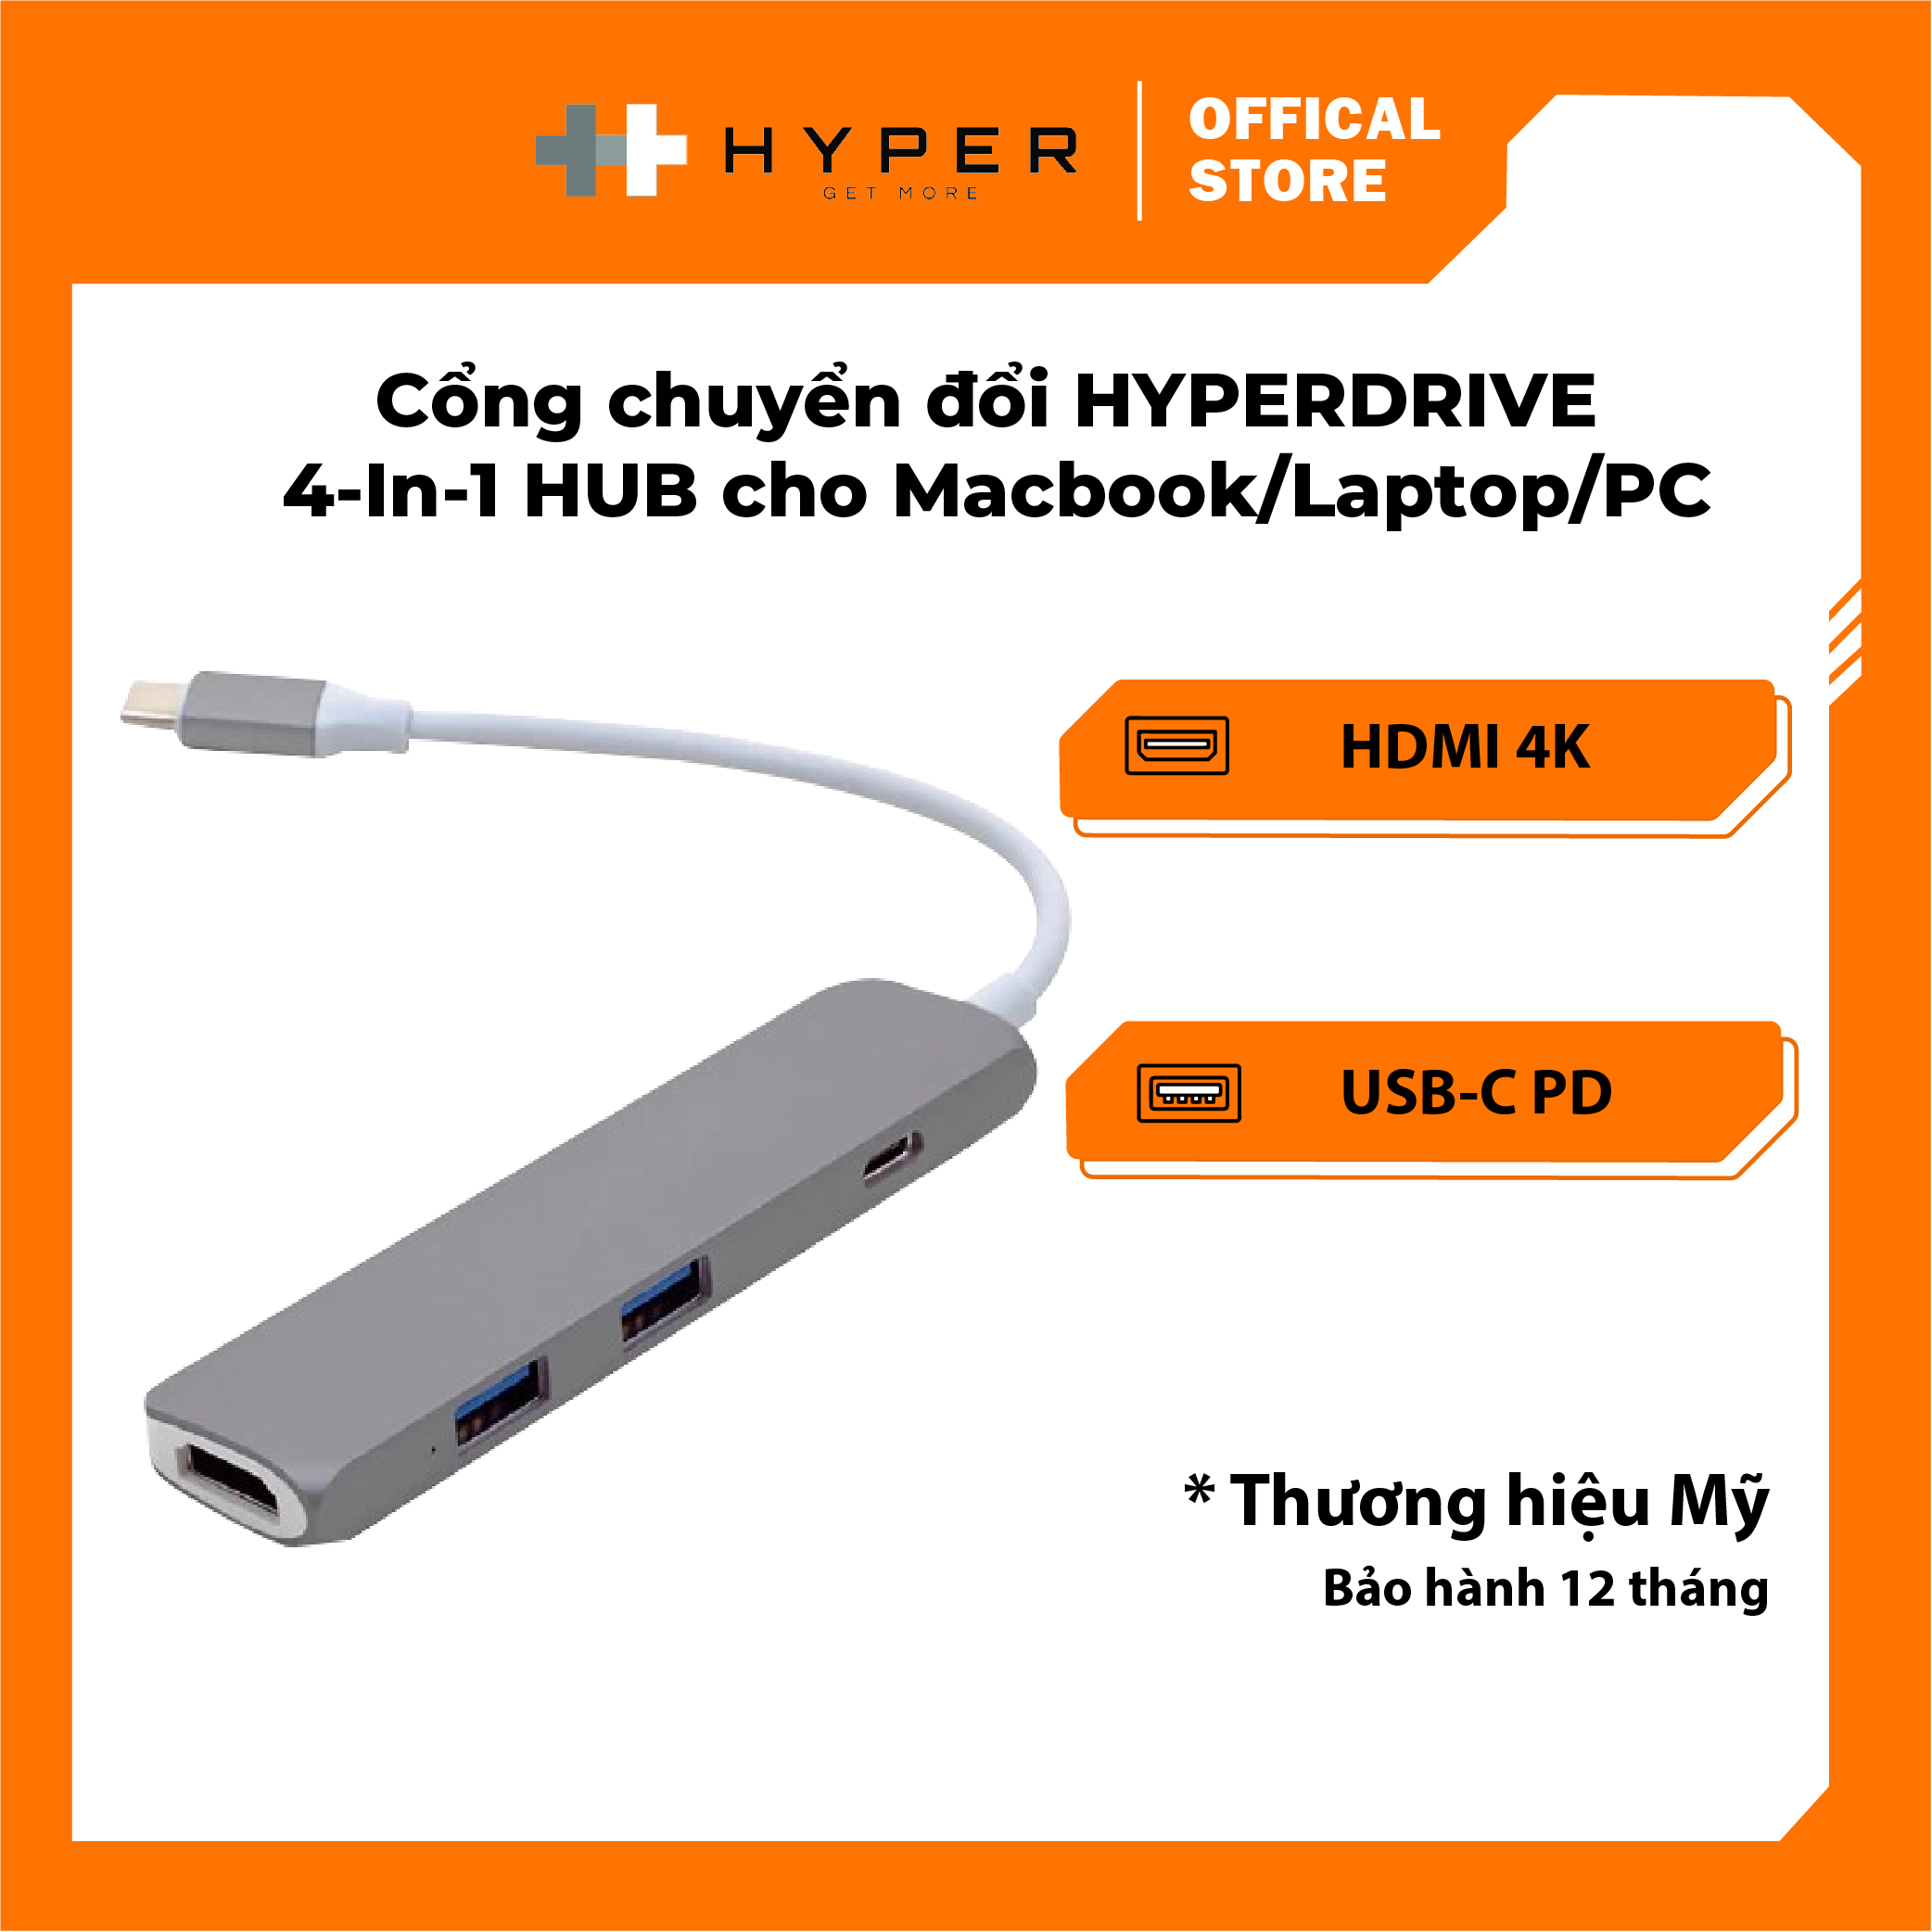 Cổng chuyển HyperDrive 4-in-1 USB-C Hub with 4K HDMI (GN22B) - Hàng chính hãng